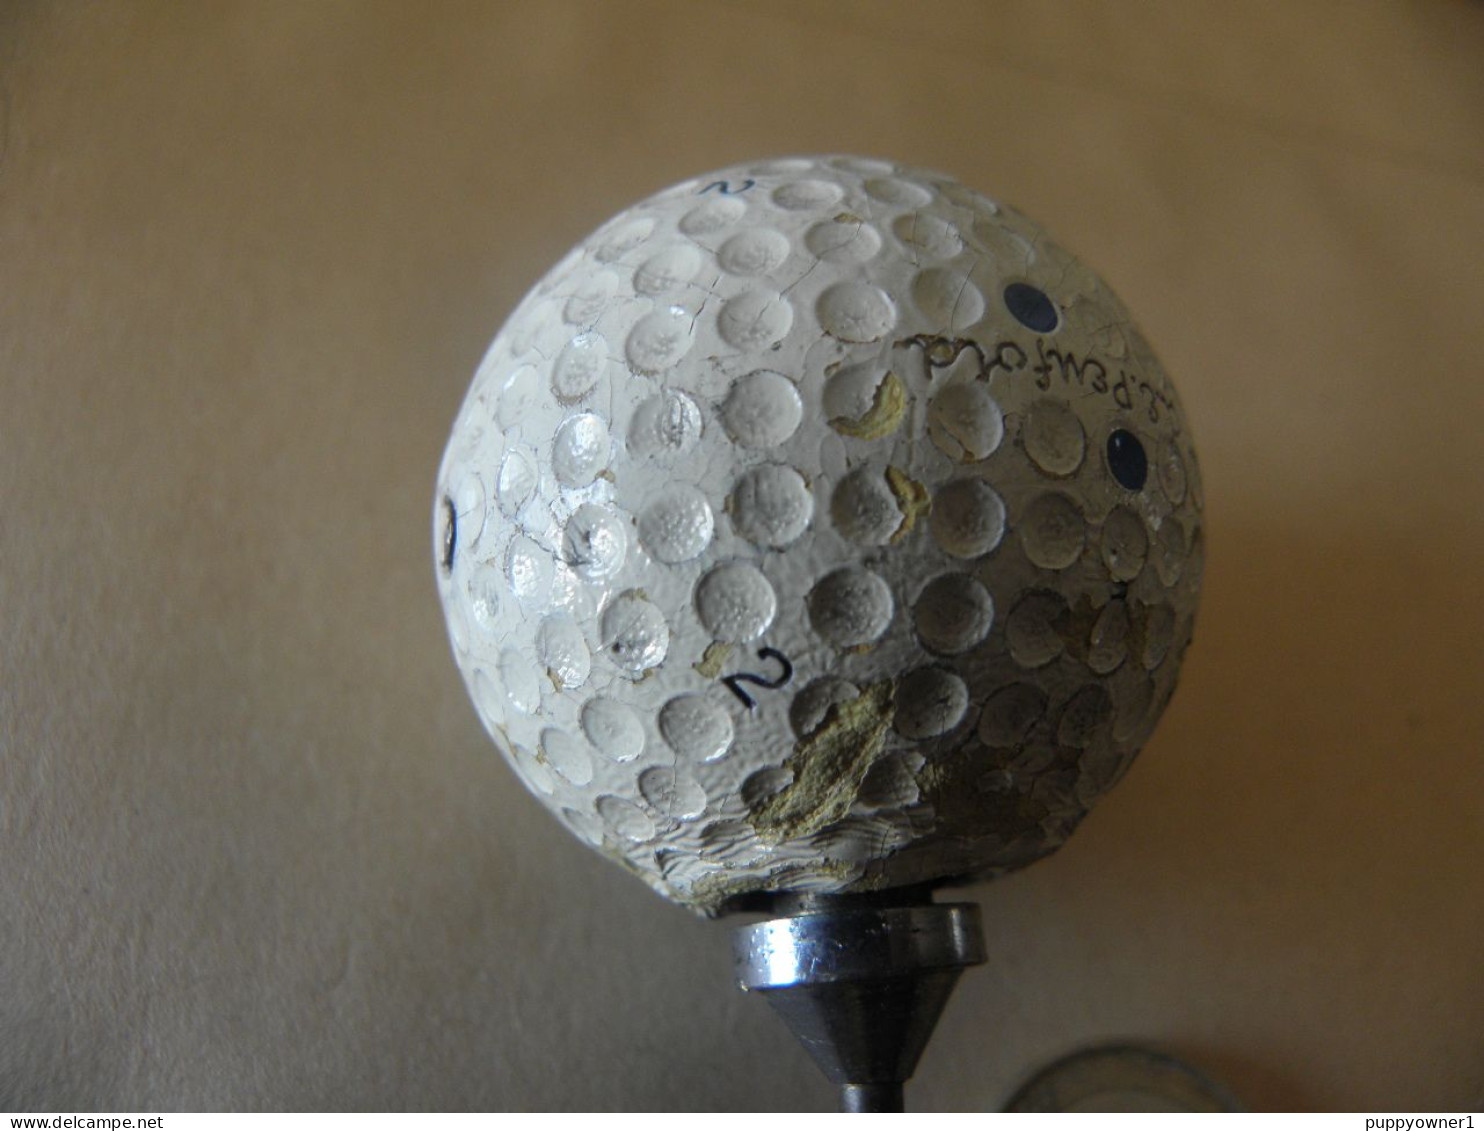 Vintage Tire-bouchon Balle De Golf A.E Penfold No° 2 Annes 40 - Tire-Bouchons/Décapsuleurs